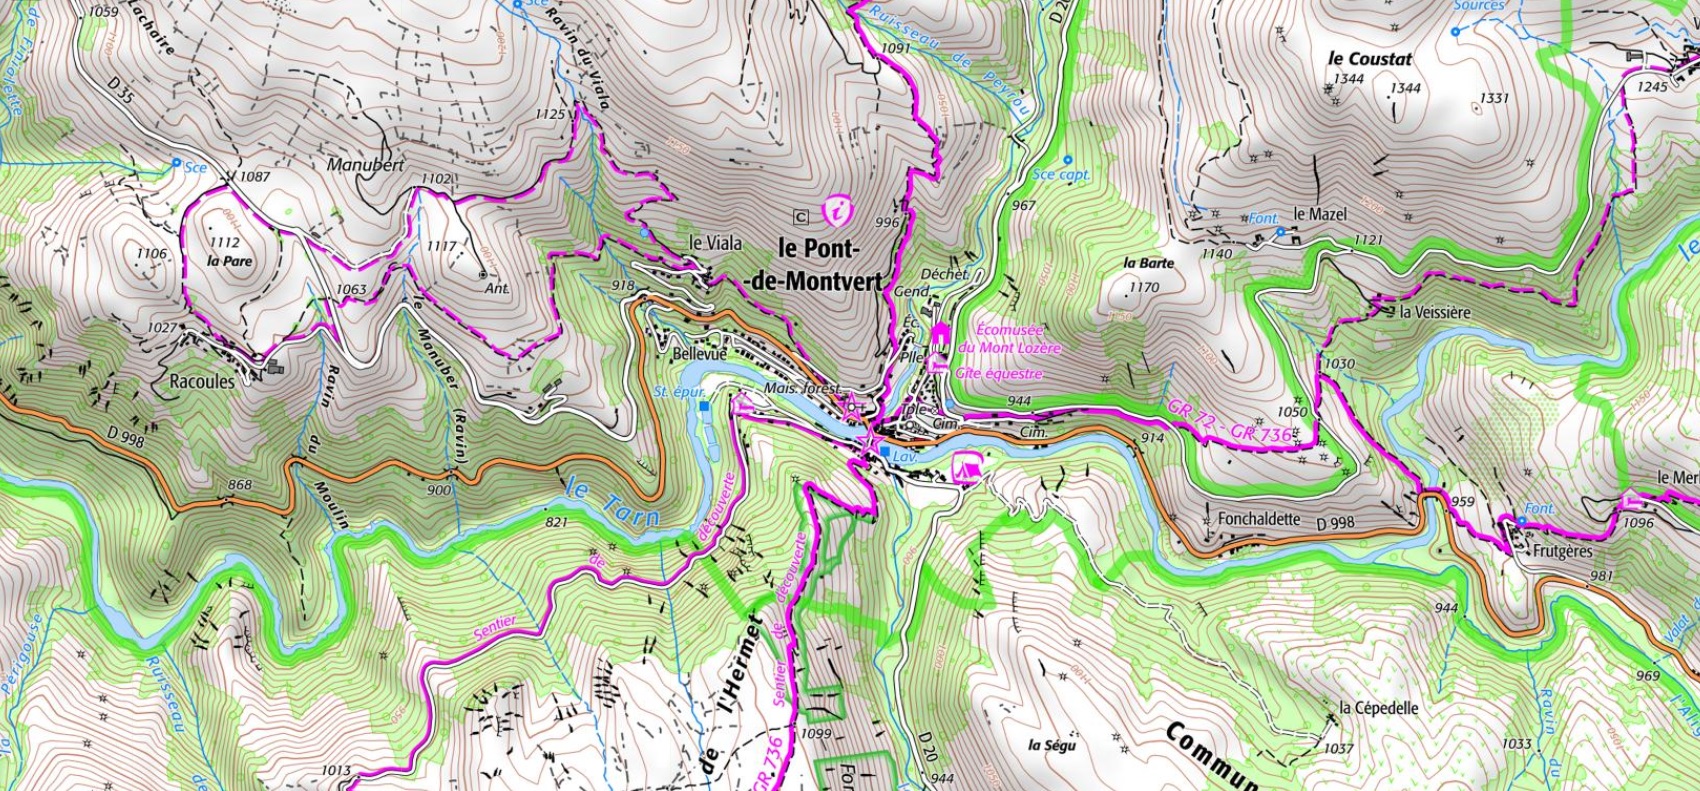 Carte et plan du Pont de Montvert en Lozère (Occitanie) sur Google Maps. Chemins de randonnées: GR®70 sentier de Stevenson et GR®72.